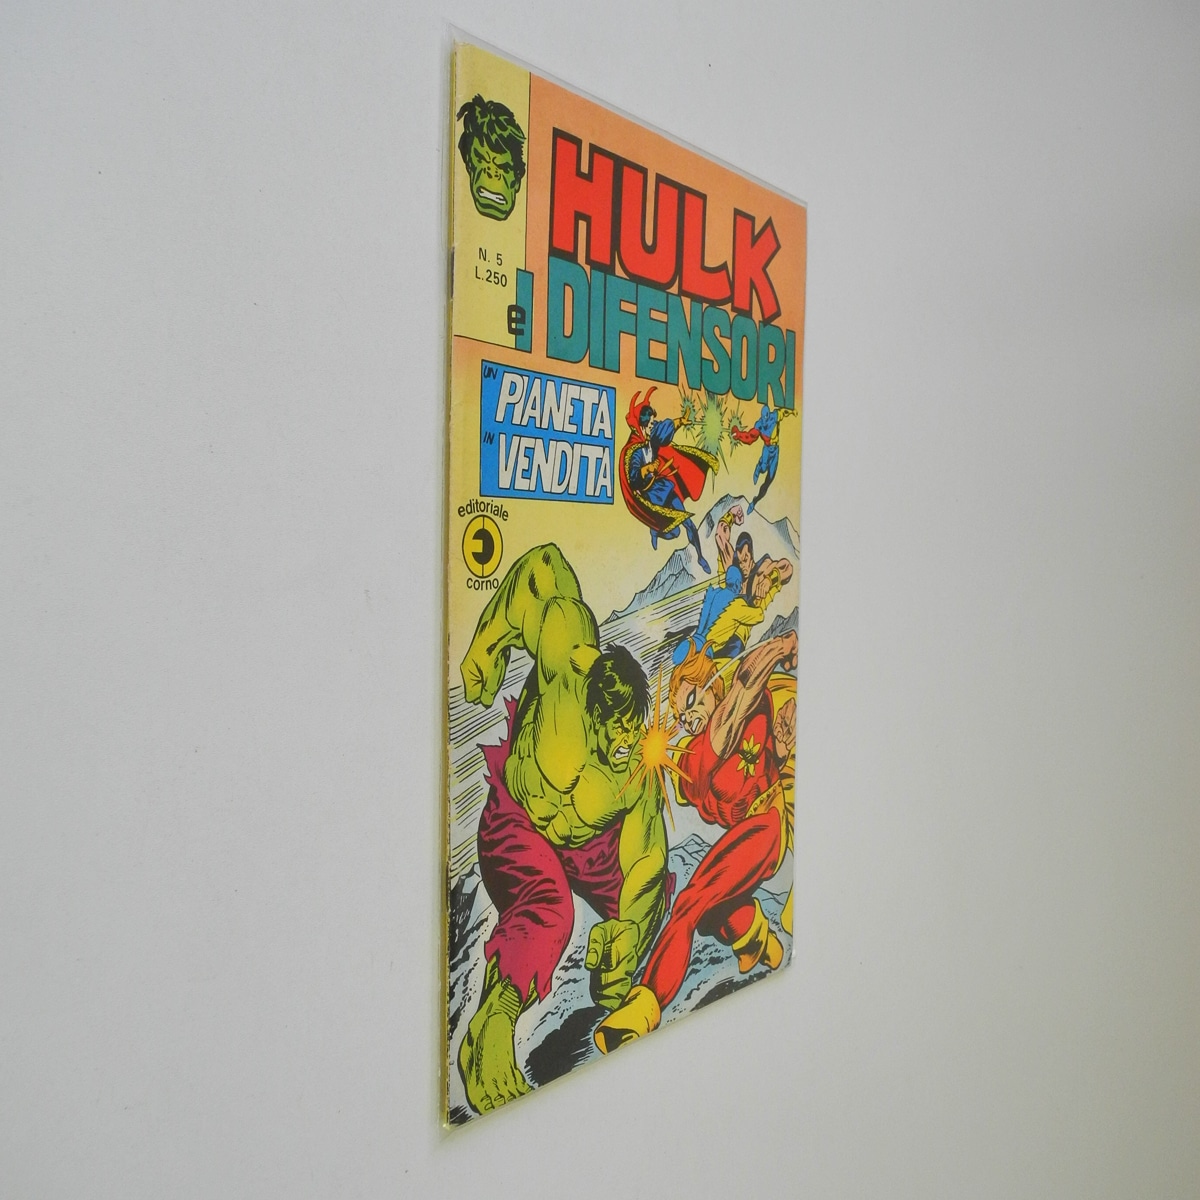 Hulk e I Difensori n. 5 Un pianeta in vendita